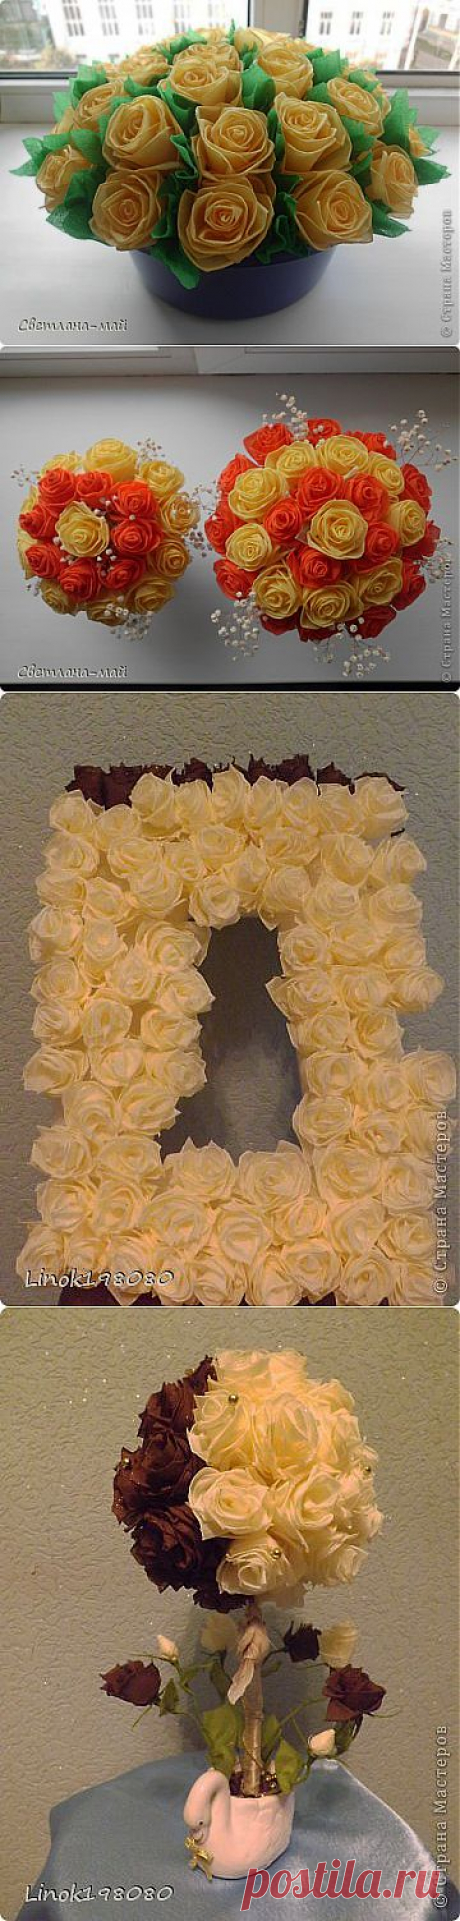 Красивые розы. МК от Linok198080